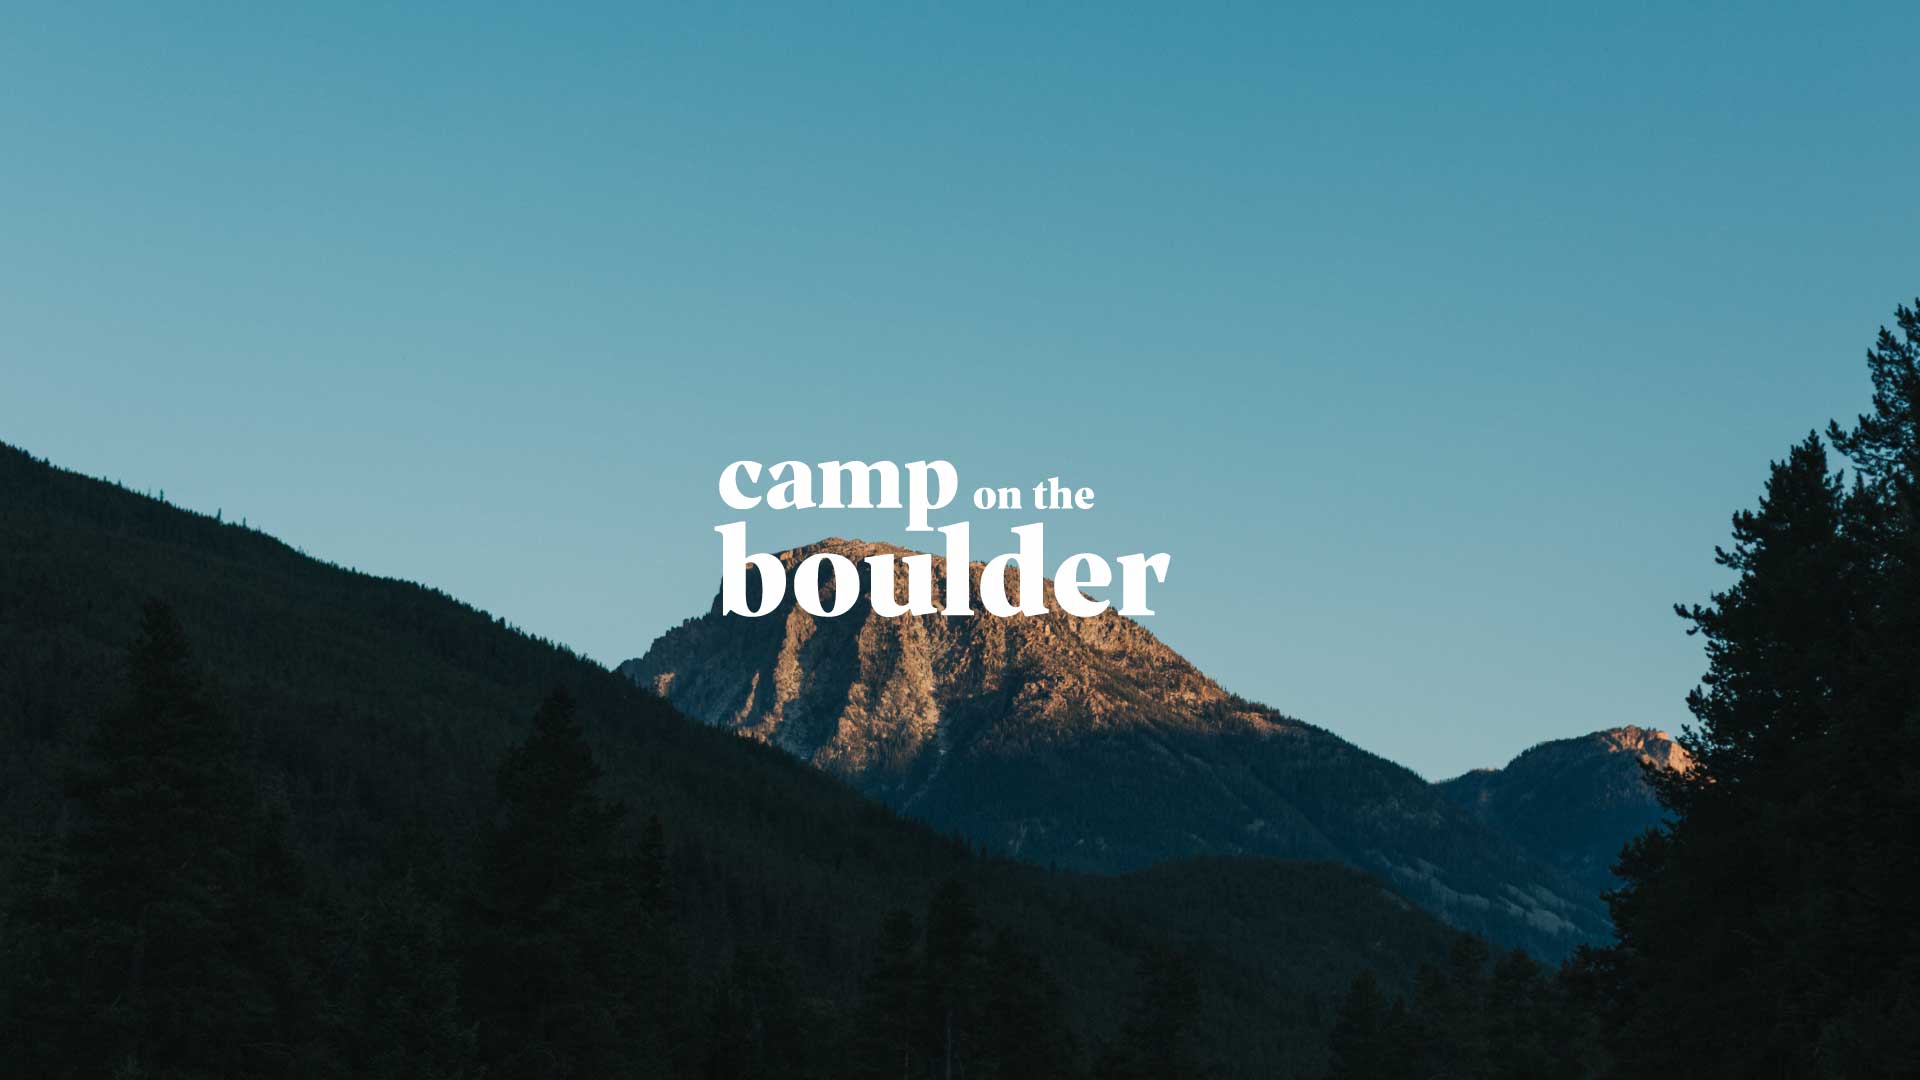 Trại trên đá Boulder – một trải nghiệm độc đáo và thú vị để khám phá thiên nhiên. Tại đây, bạn sẽ được tận hưởng không khí trong lành và tầm nhìn đẹp tuyệt vời của dãy núi. Hãy thức dậy vào sáng sớm để chiêm ngưỡng một bình minh đầy màu sắc và hóng gió thật sâu trong không gian yên tĩnh này. 